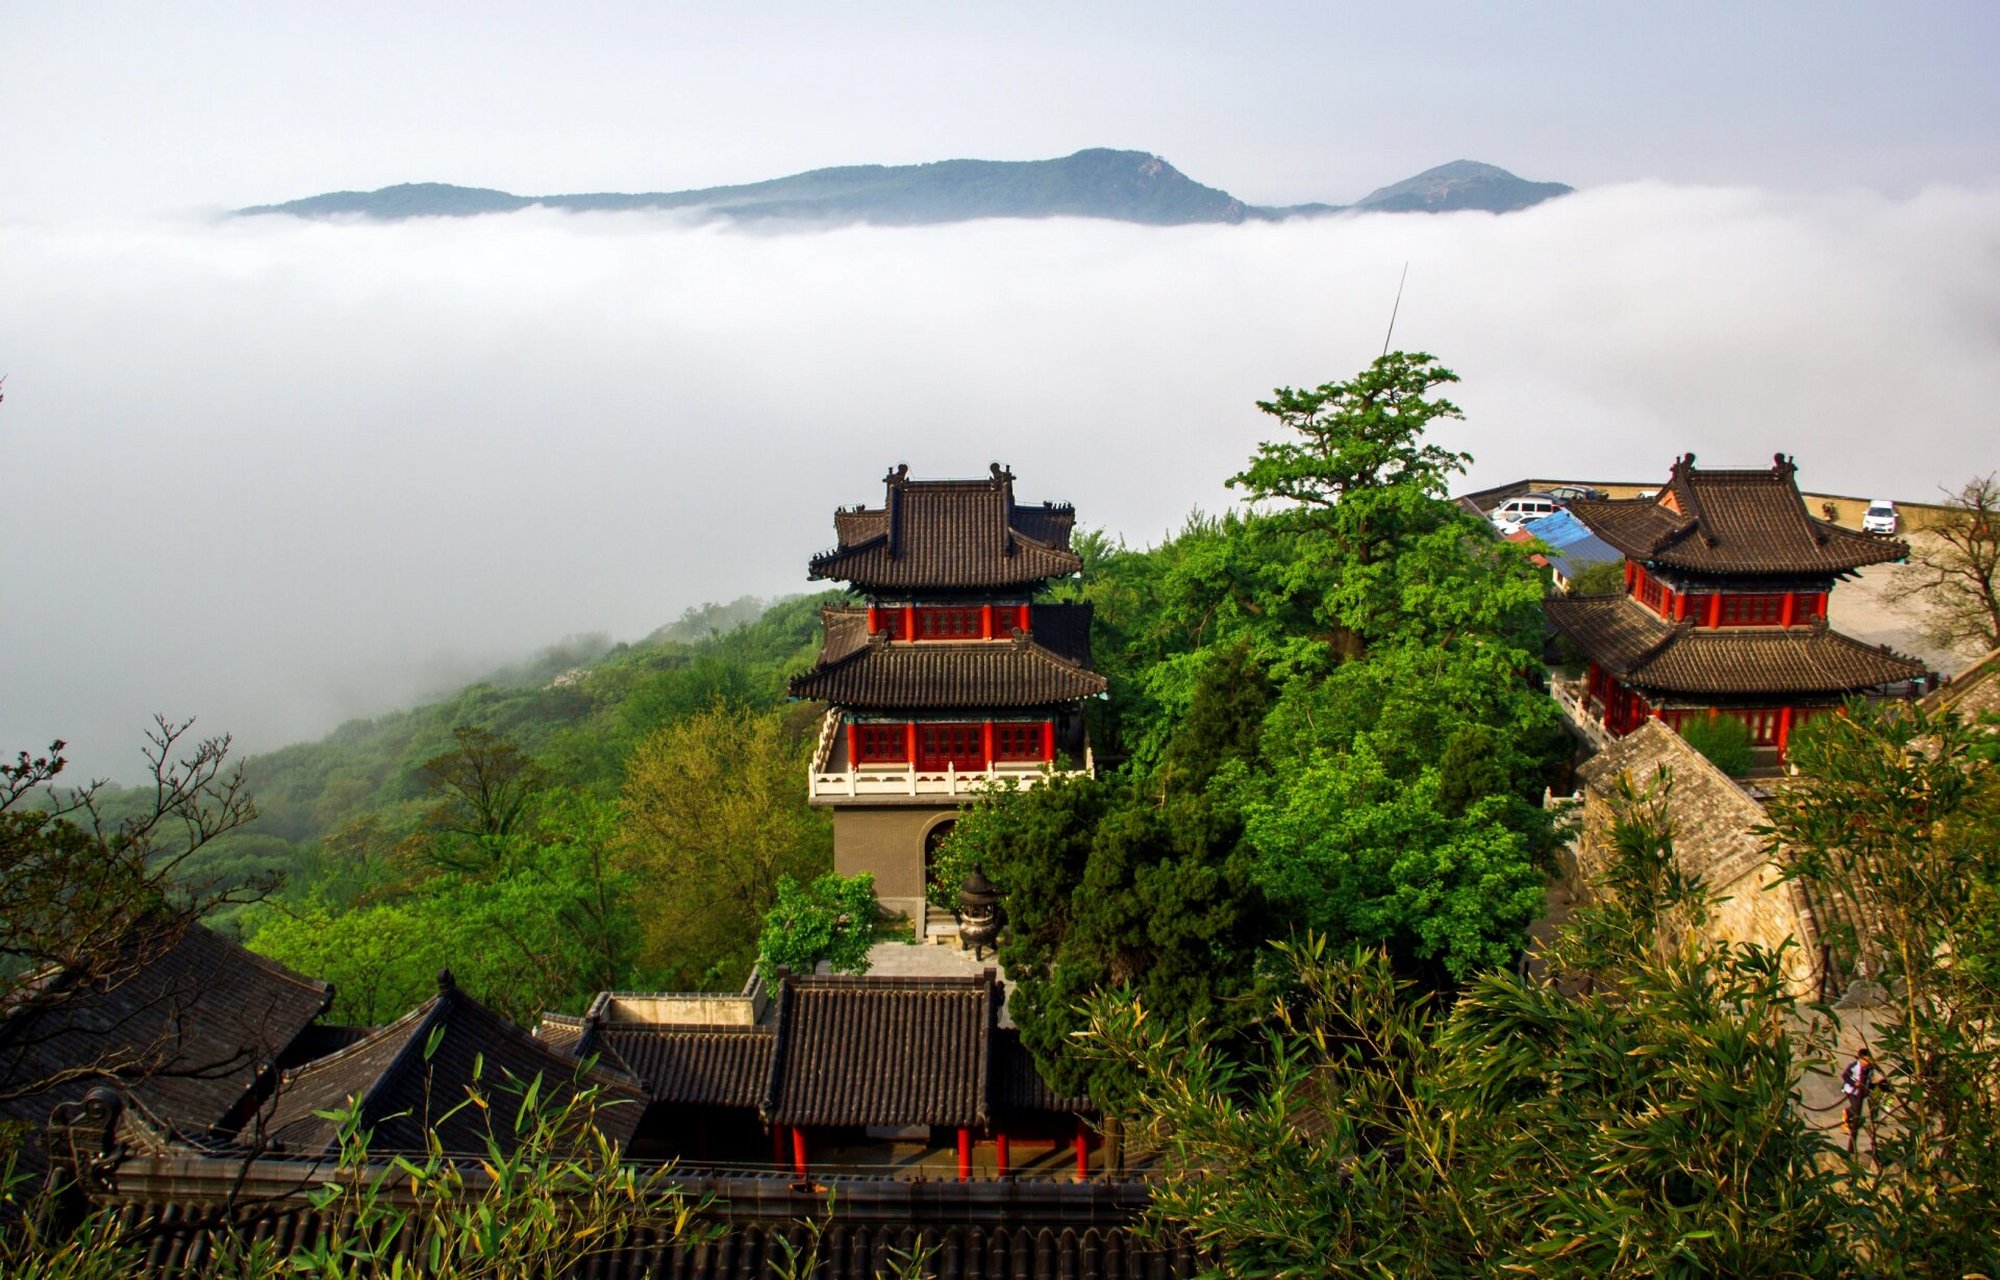 花果山游记 一,旅游概述 花果山位于中国江苏省连云港市,是中国著名的